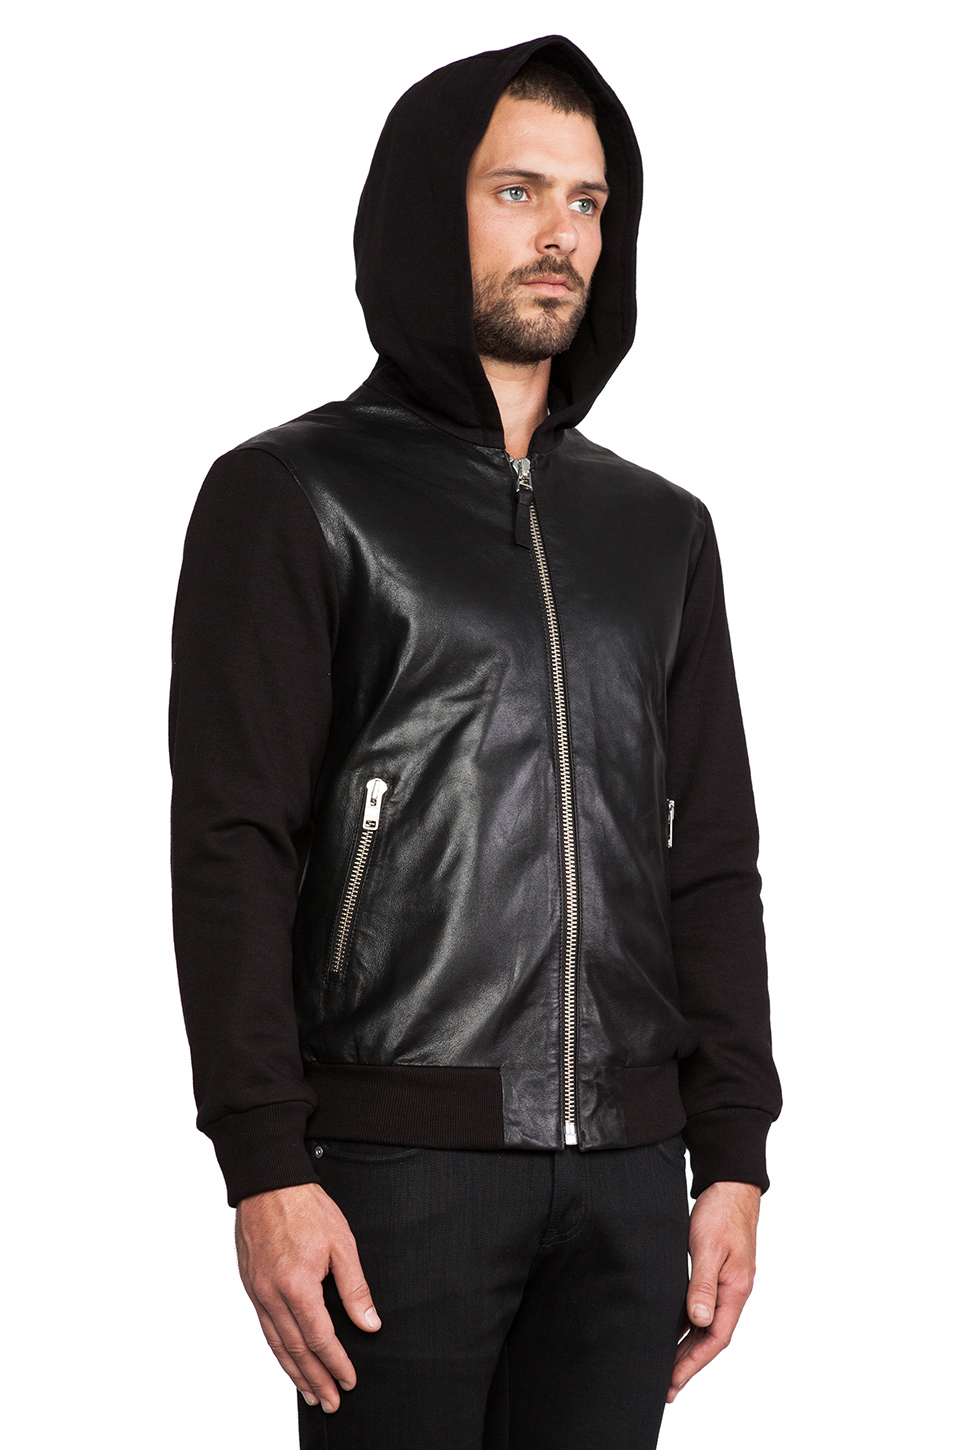 Mackage Elvin Leather Hoodie in Black for Men - Lyst